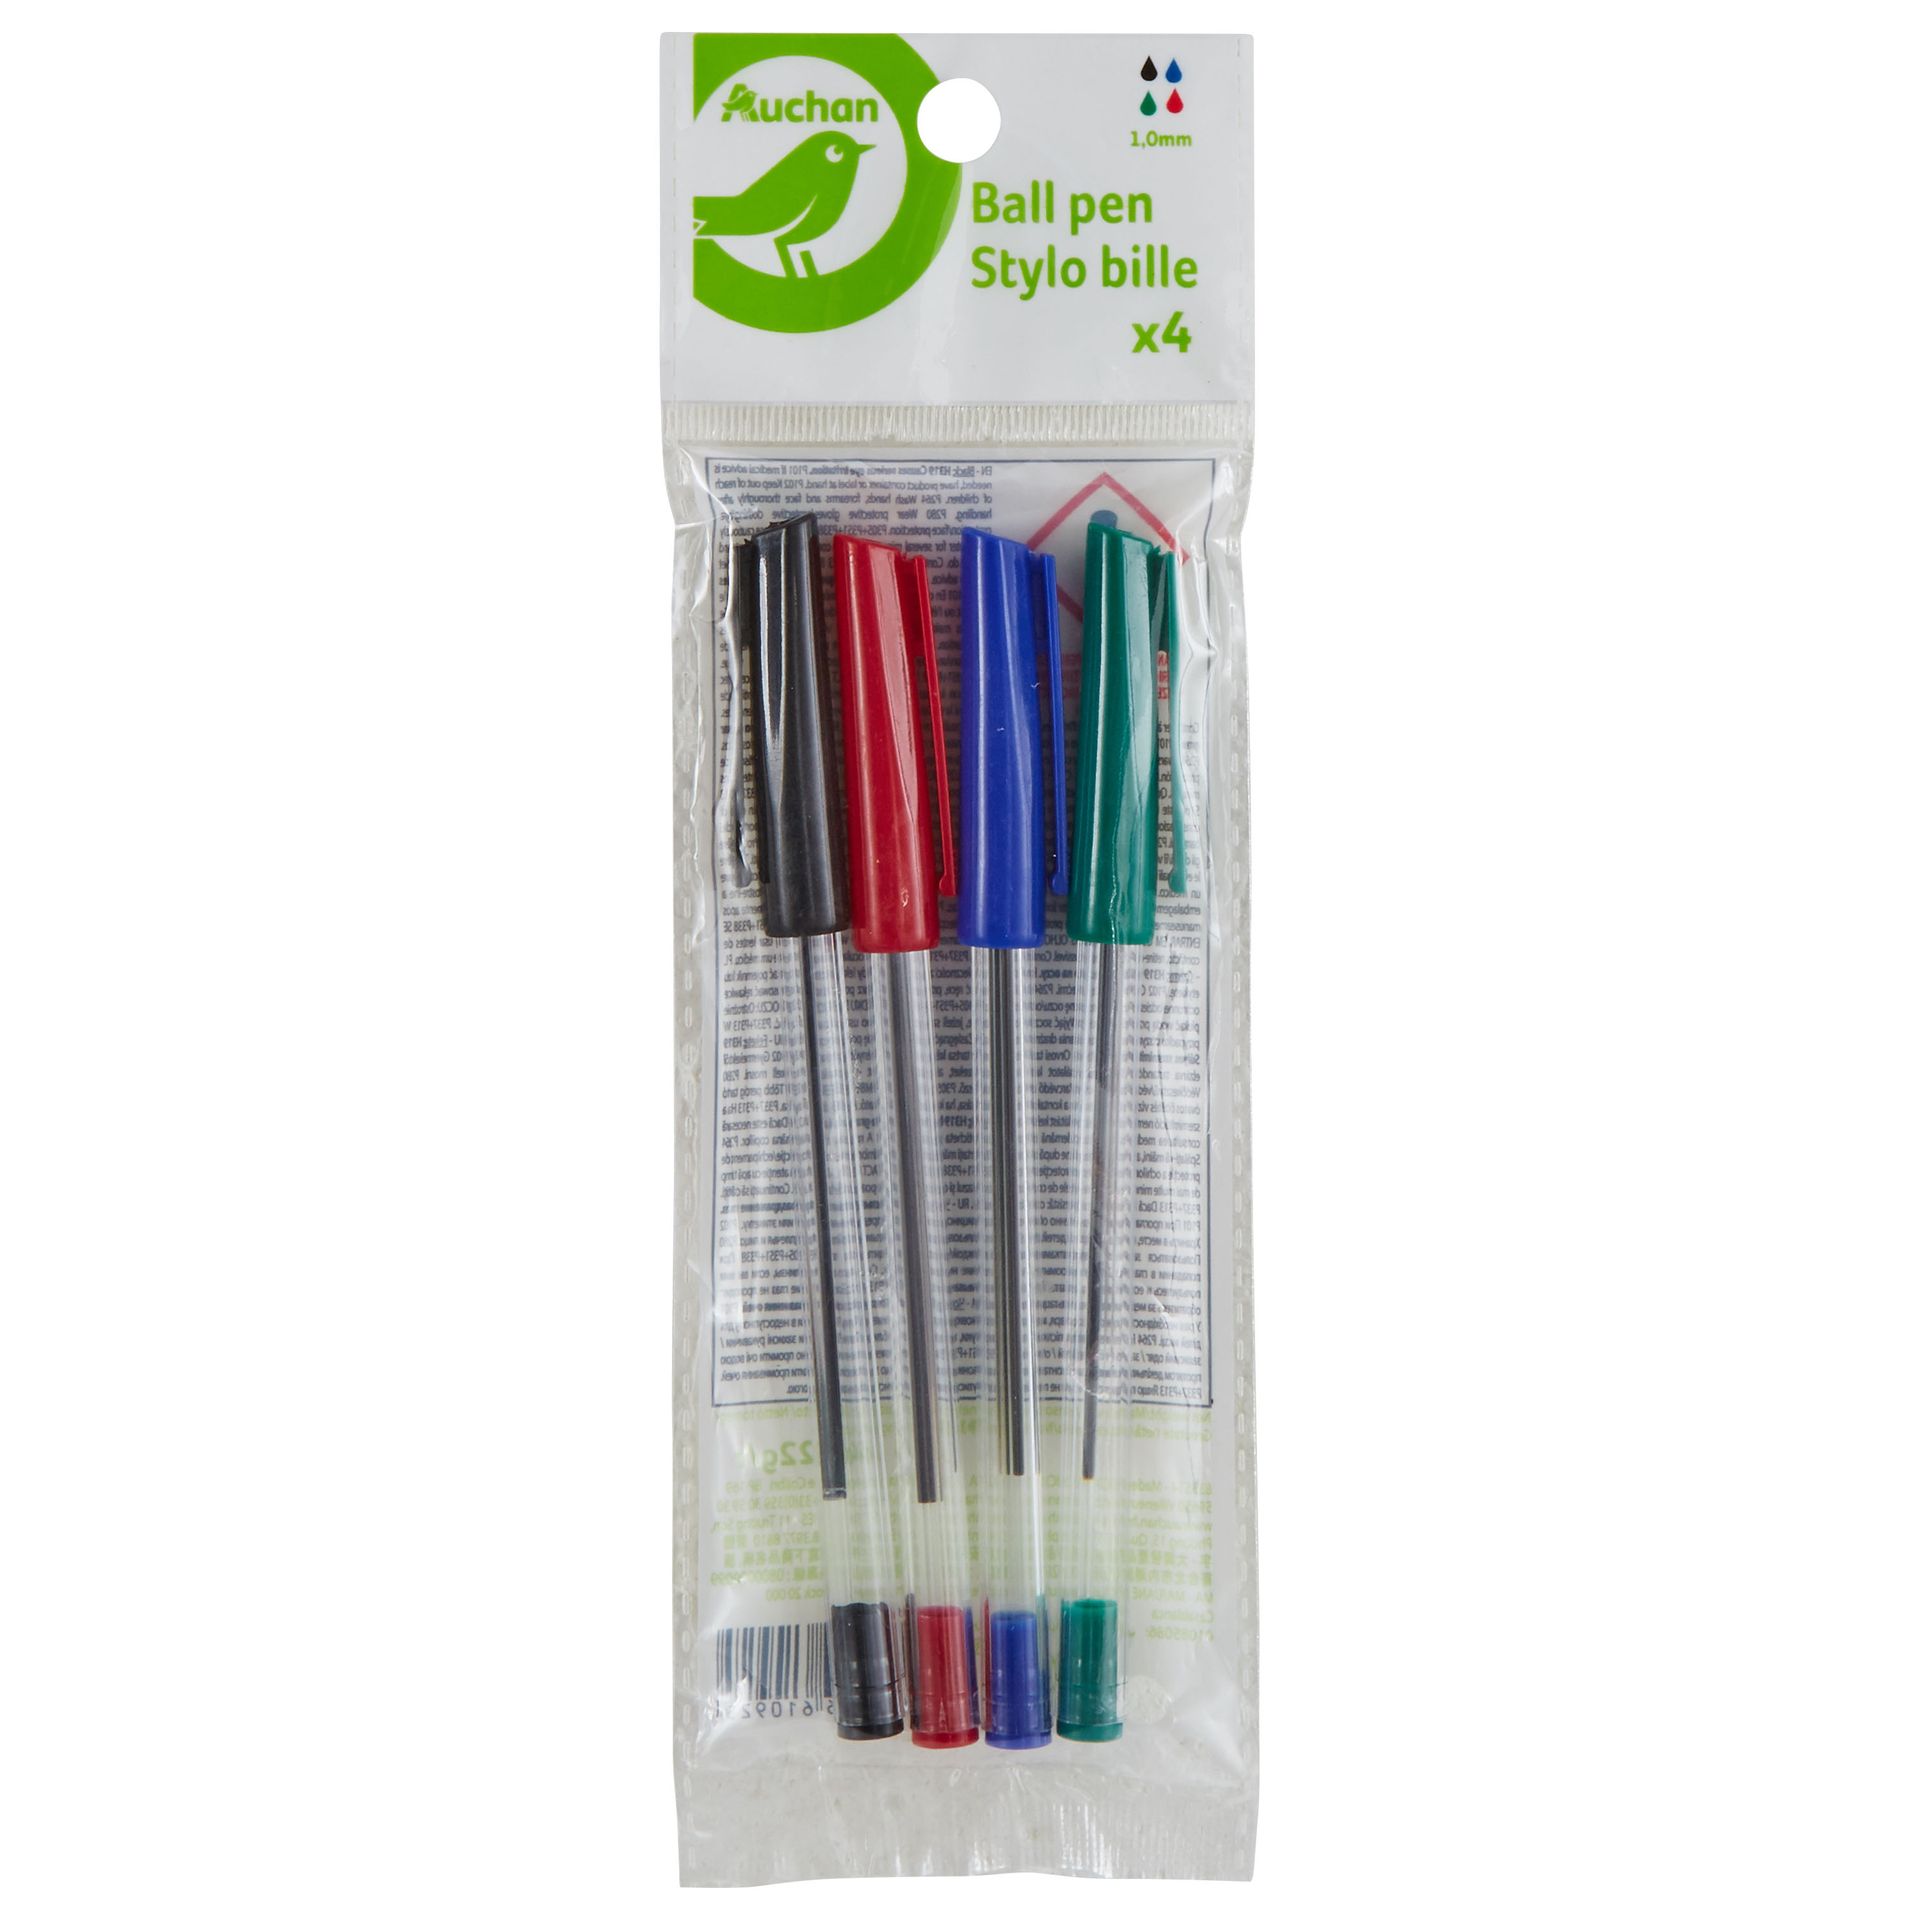 Auchan - Długopis Stylo bille  1.0 mm różne kolory